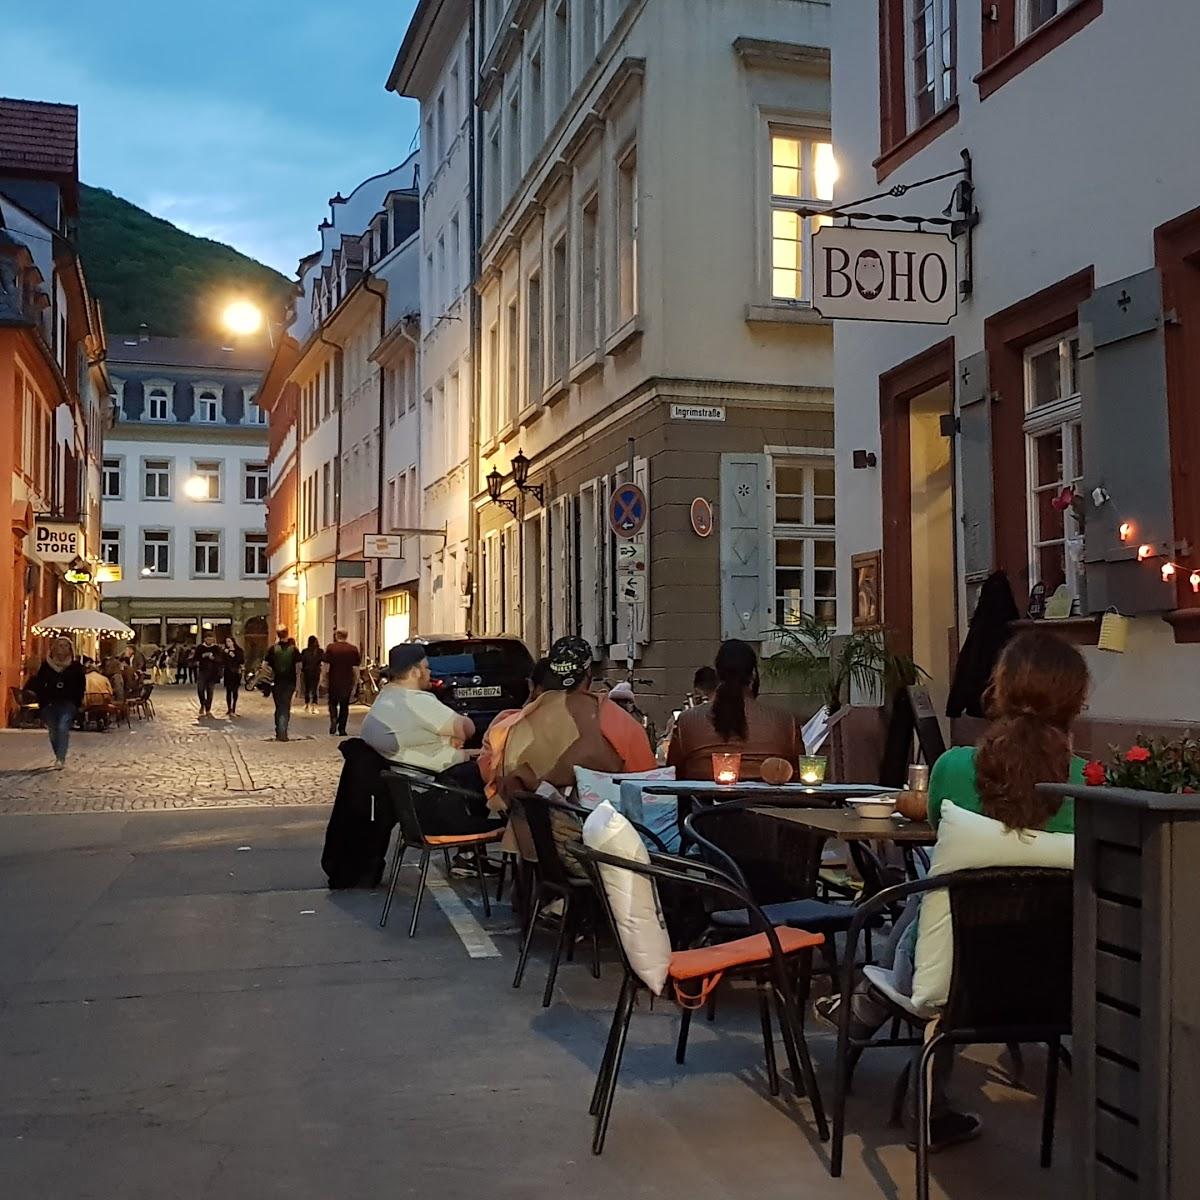 Restaurant "BOHO Bar" in Heidelberg